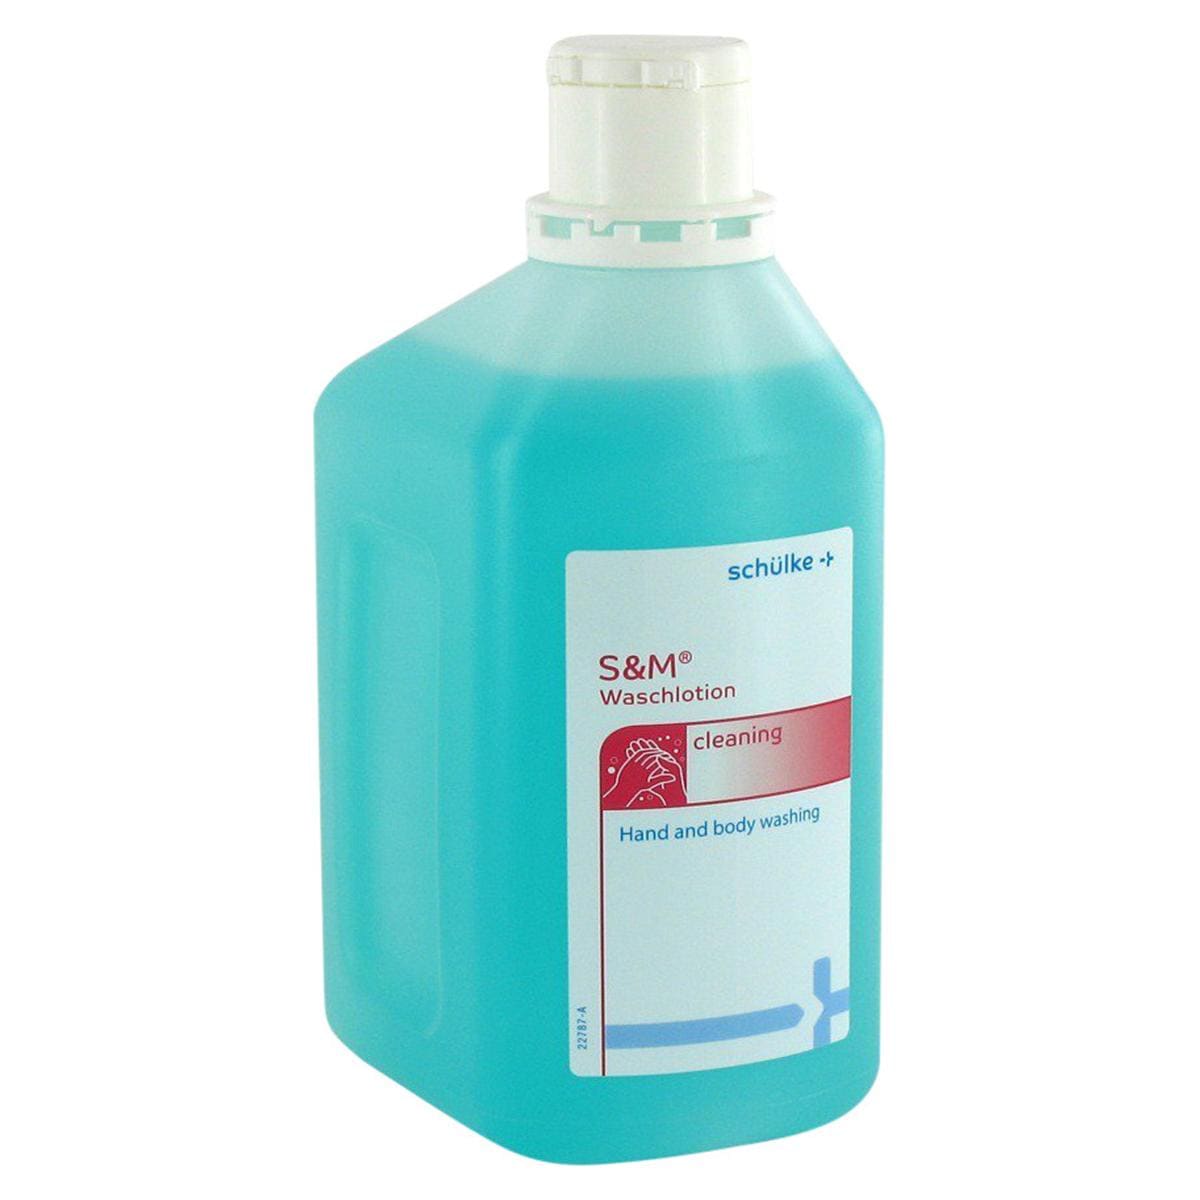 s&m Waschlotion - Flasche 1 Liter